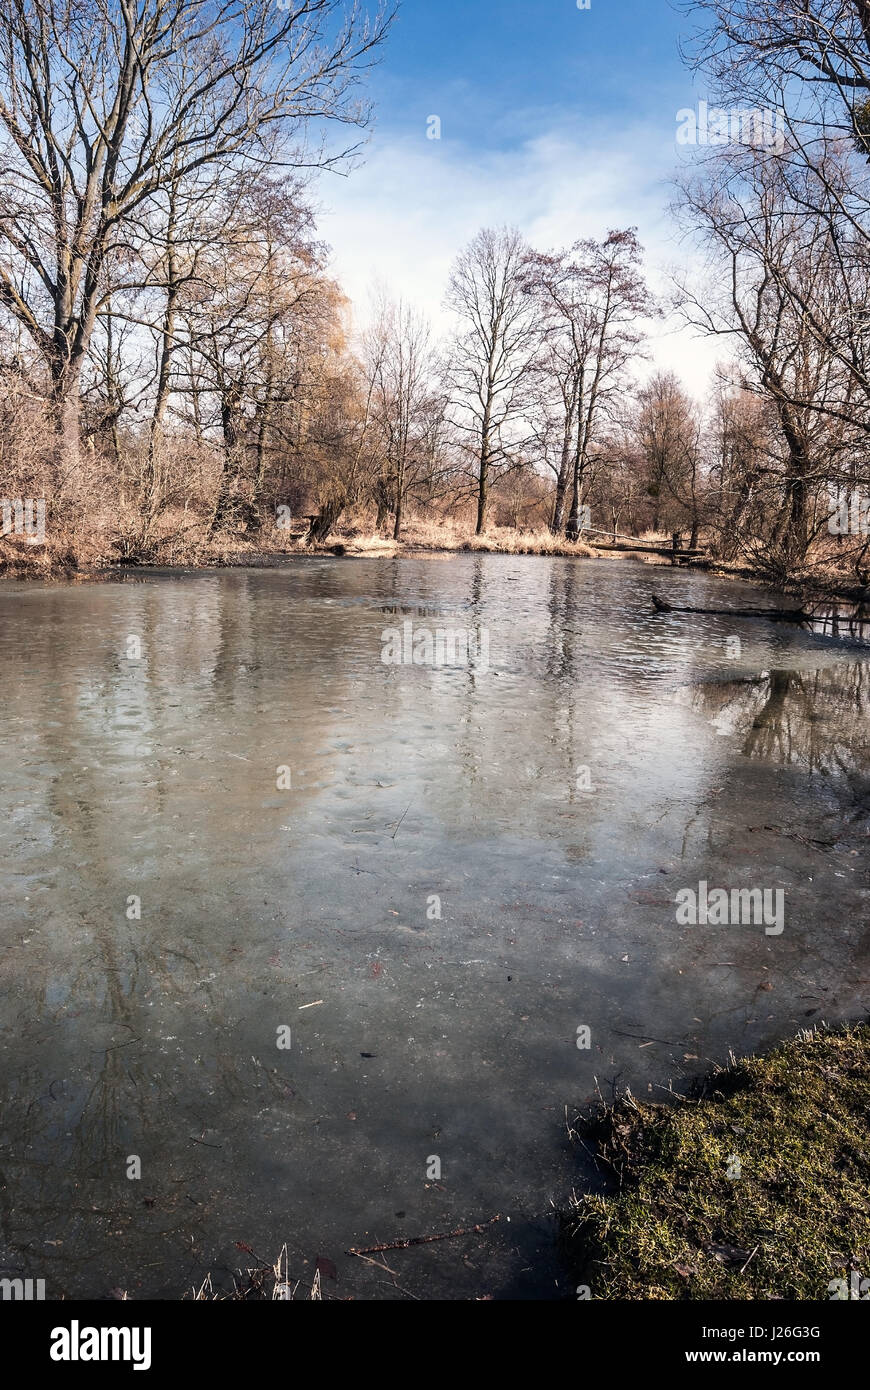 Slanaky congelés en partie le lac de la rivière avec des arbres et ciel bleu en début du printemps chko poodri près de studenka city en République tchèque Banque D'Images